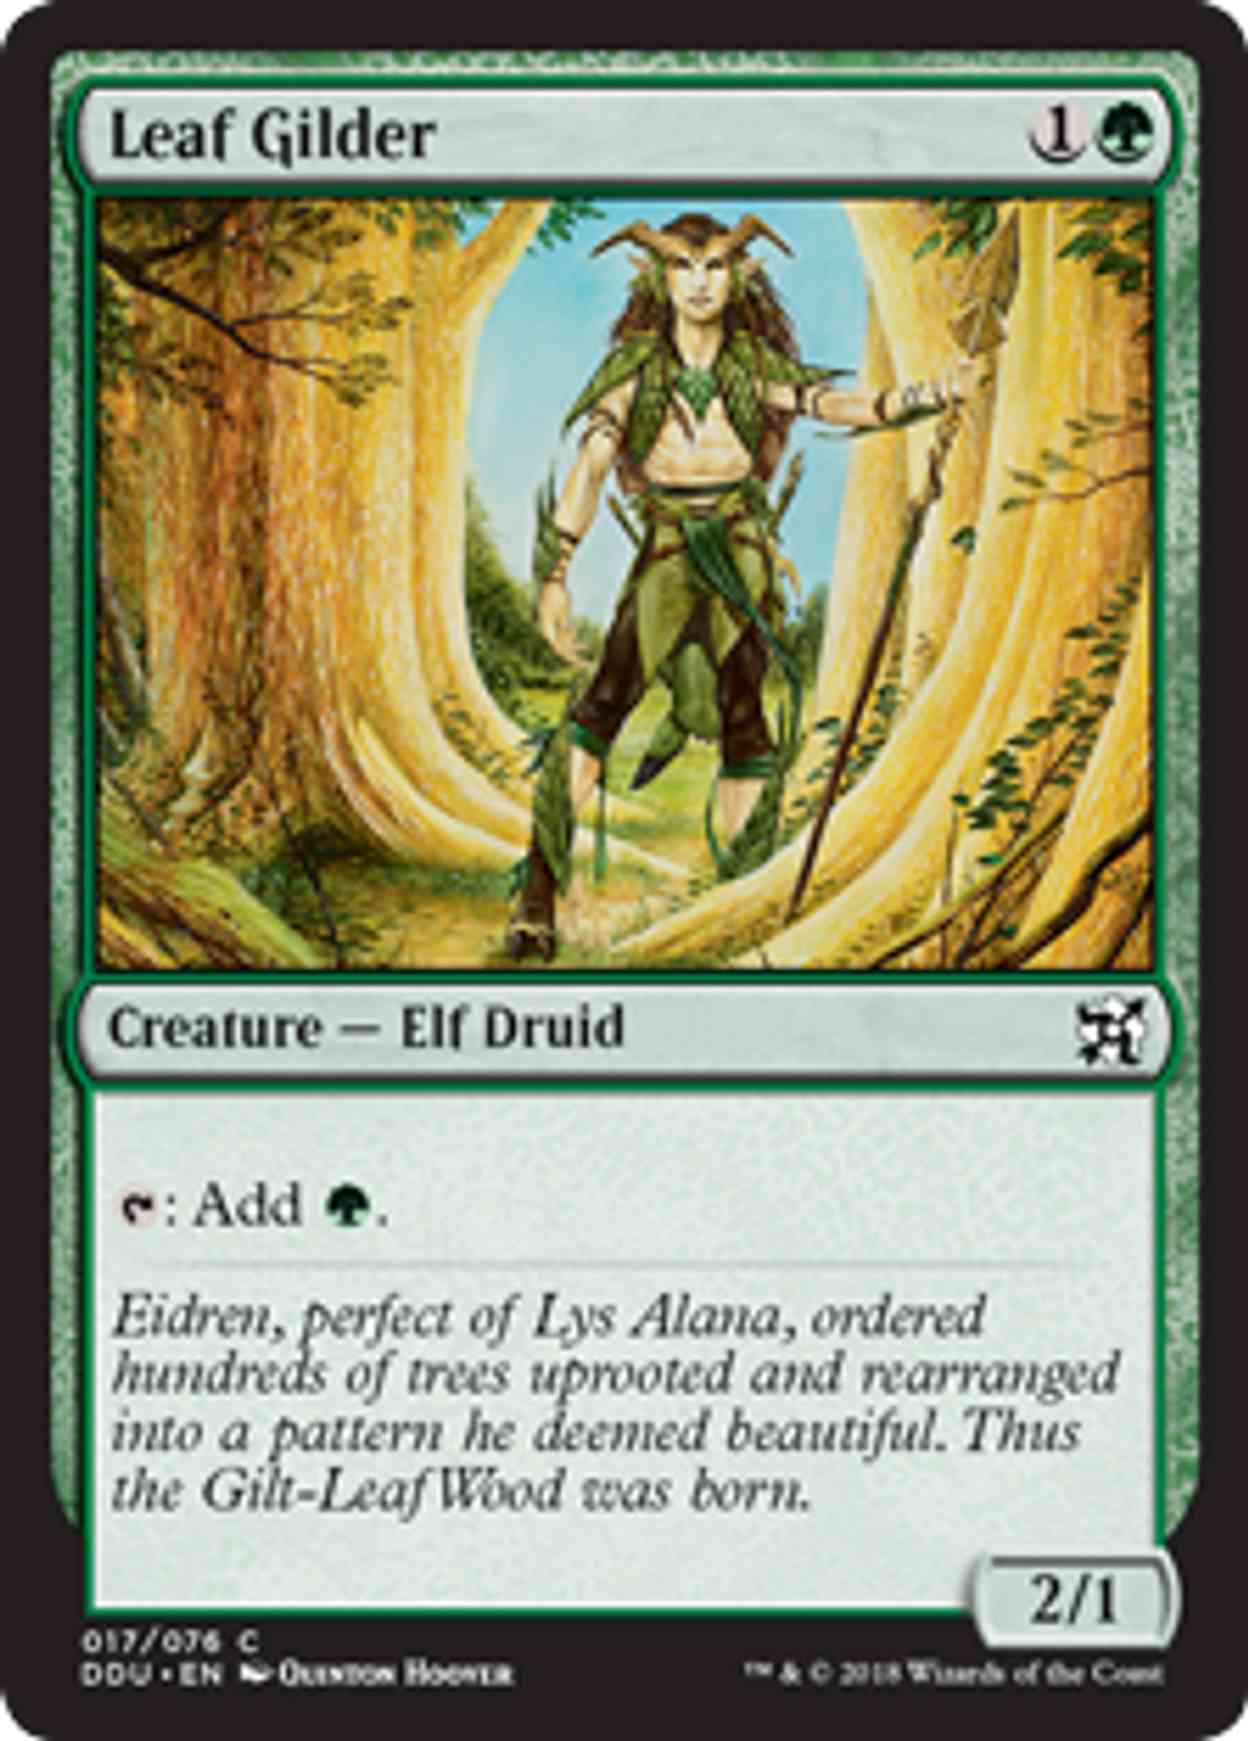 Leaf Gilder magic card front